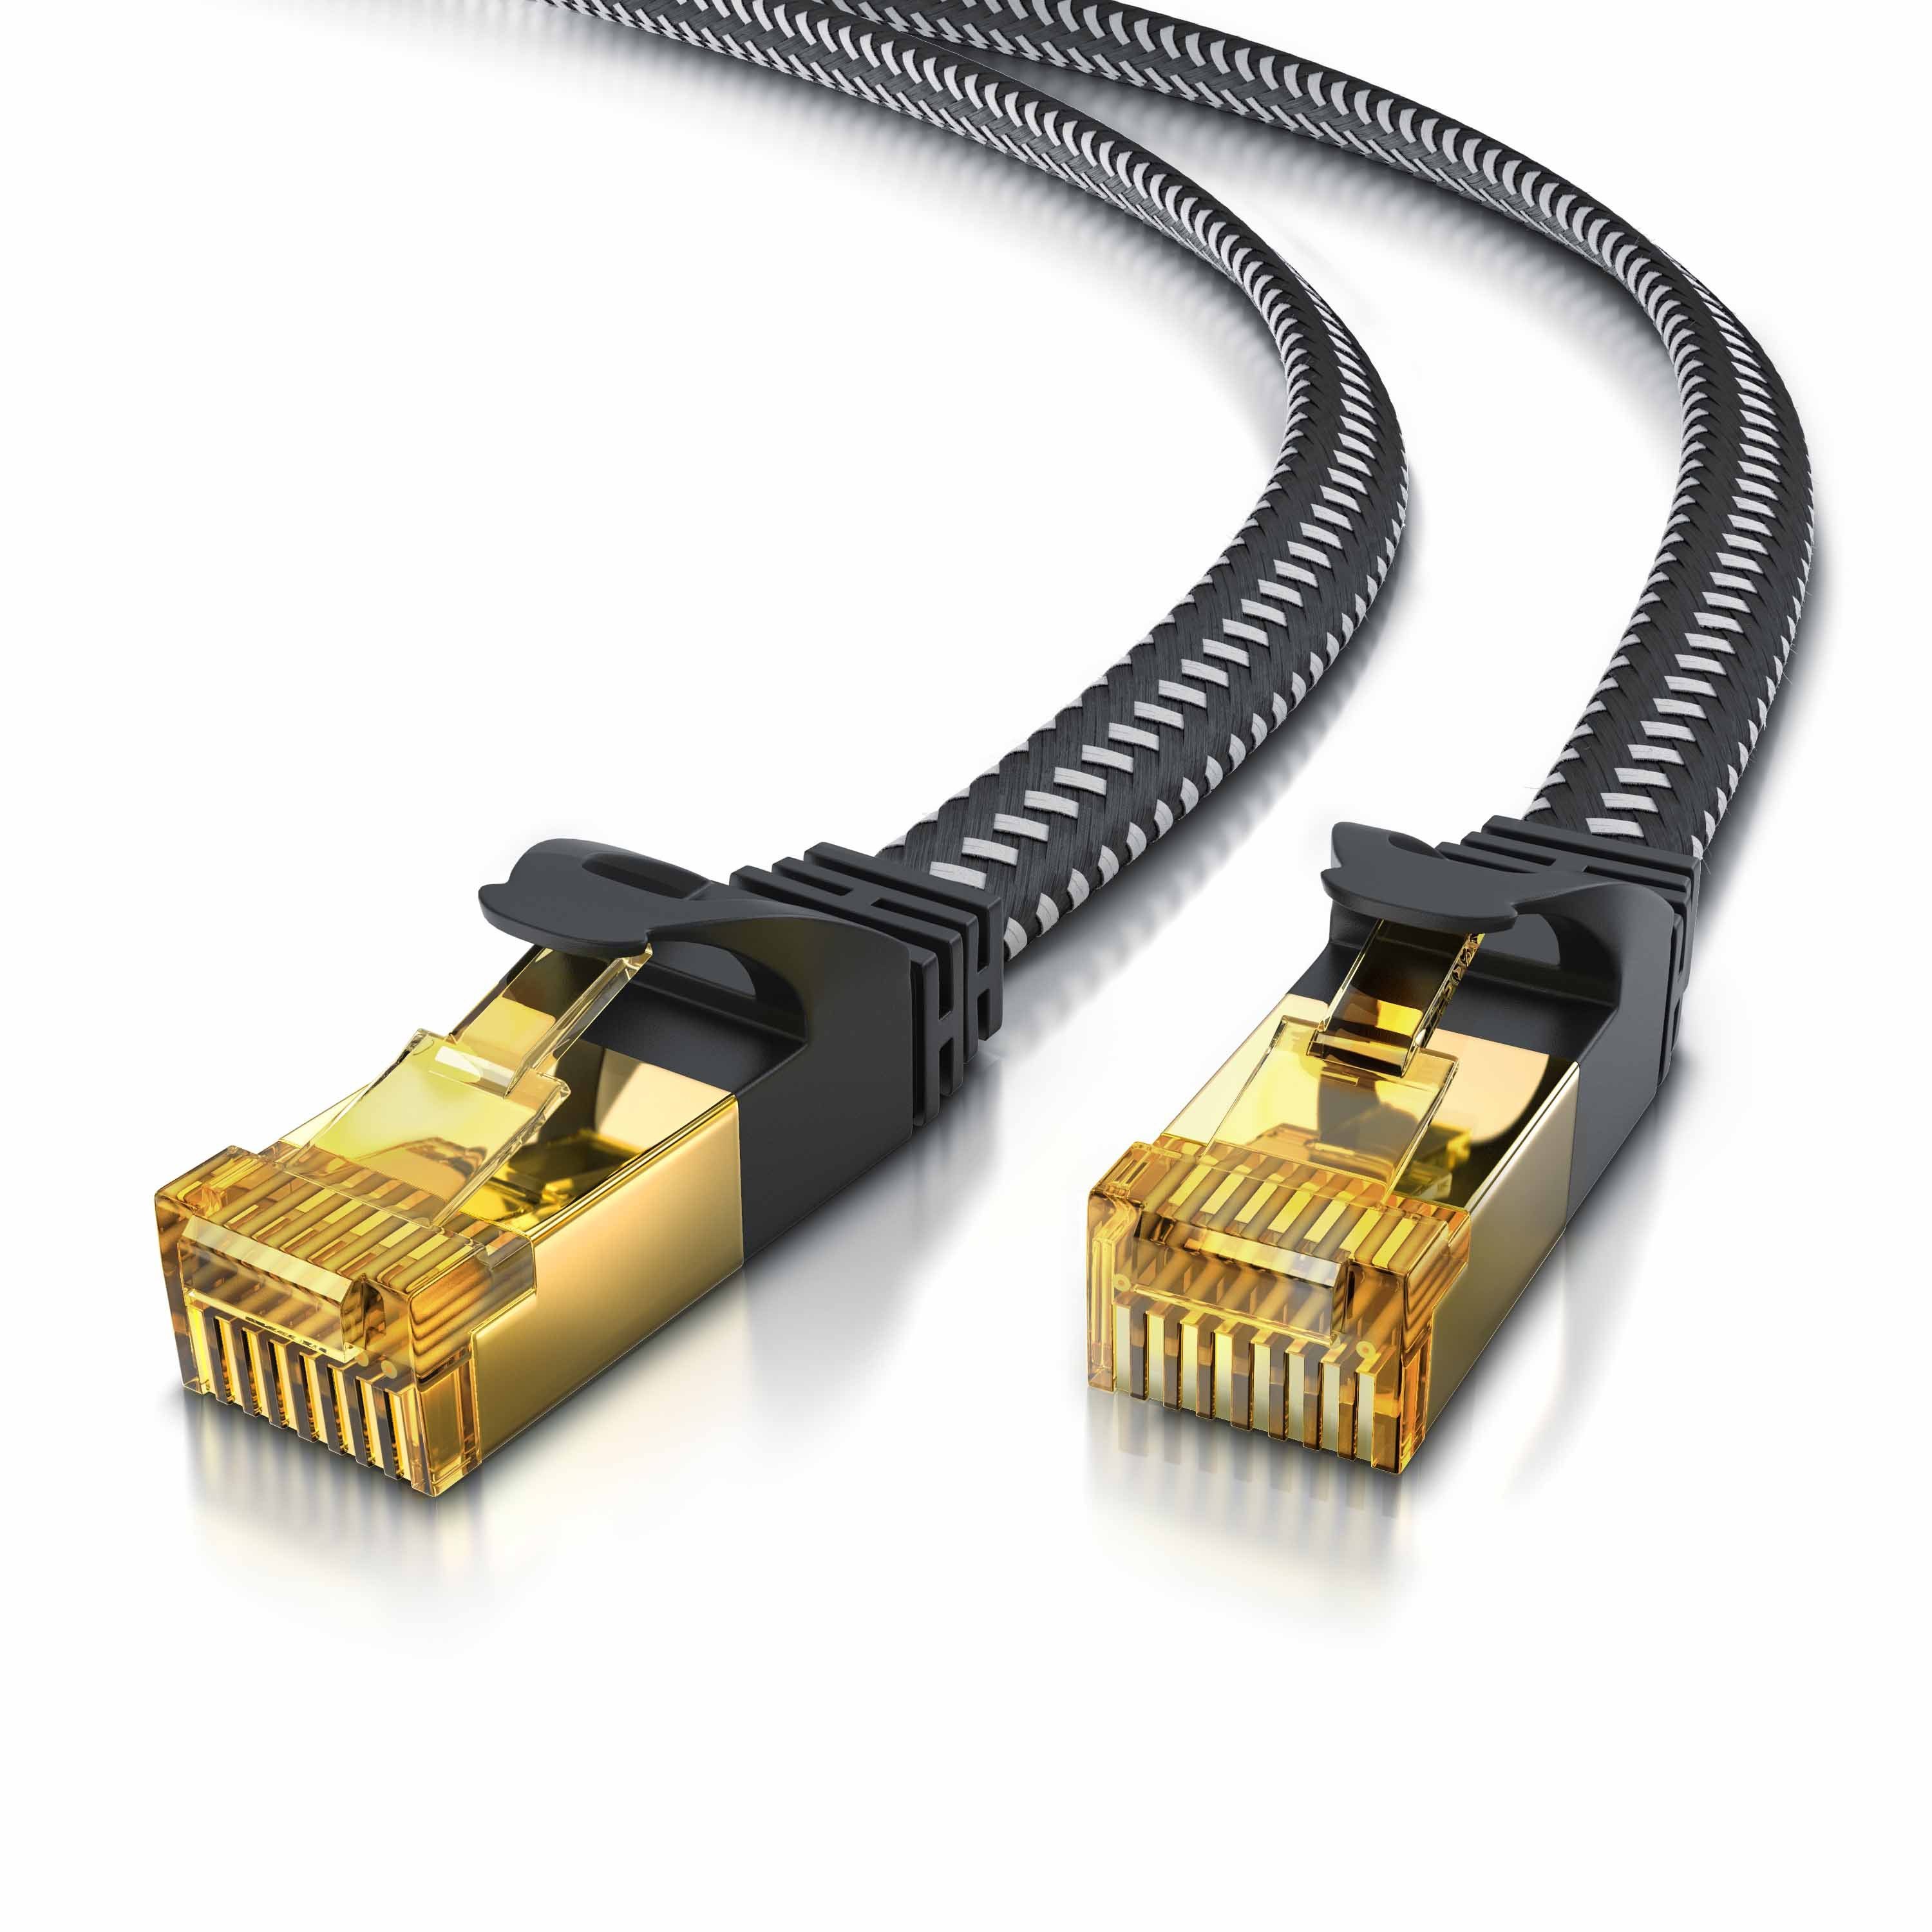 Primewire 30,0m CAT.7 Gigabit Ethernet Lan Netzwerkkabel Flachband RJ45 Stecker 